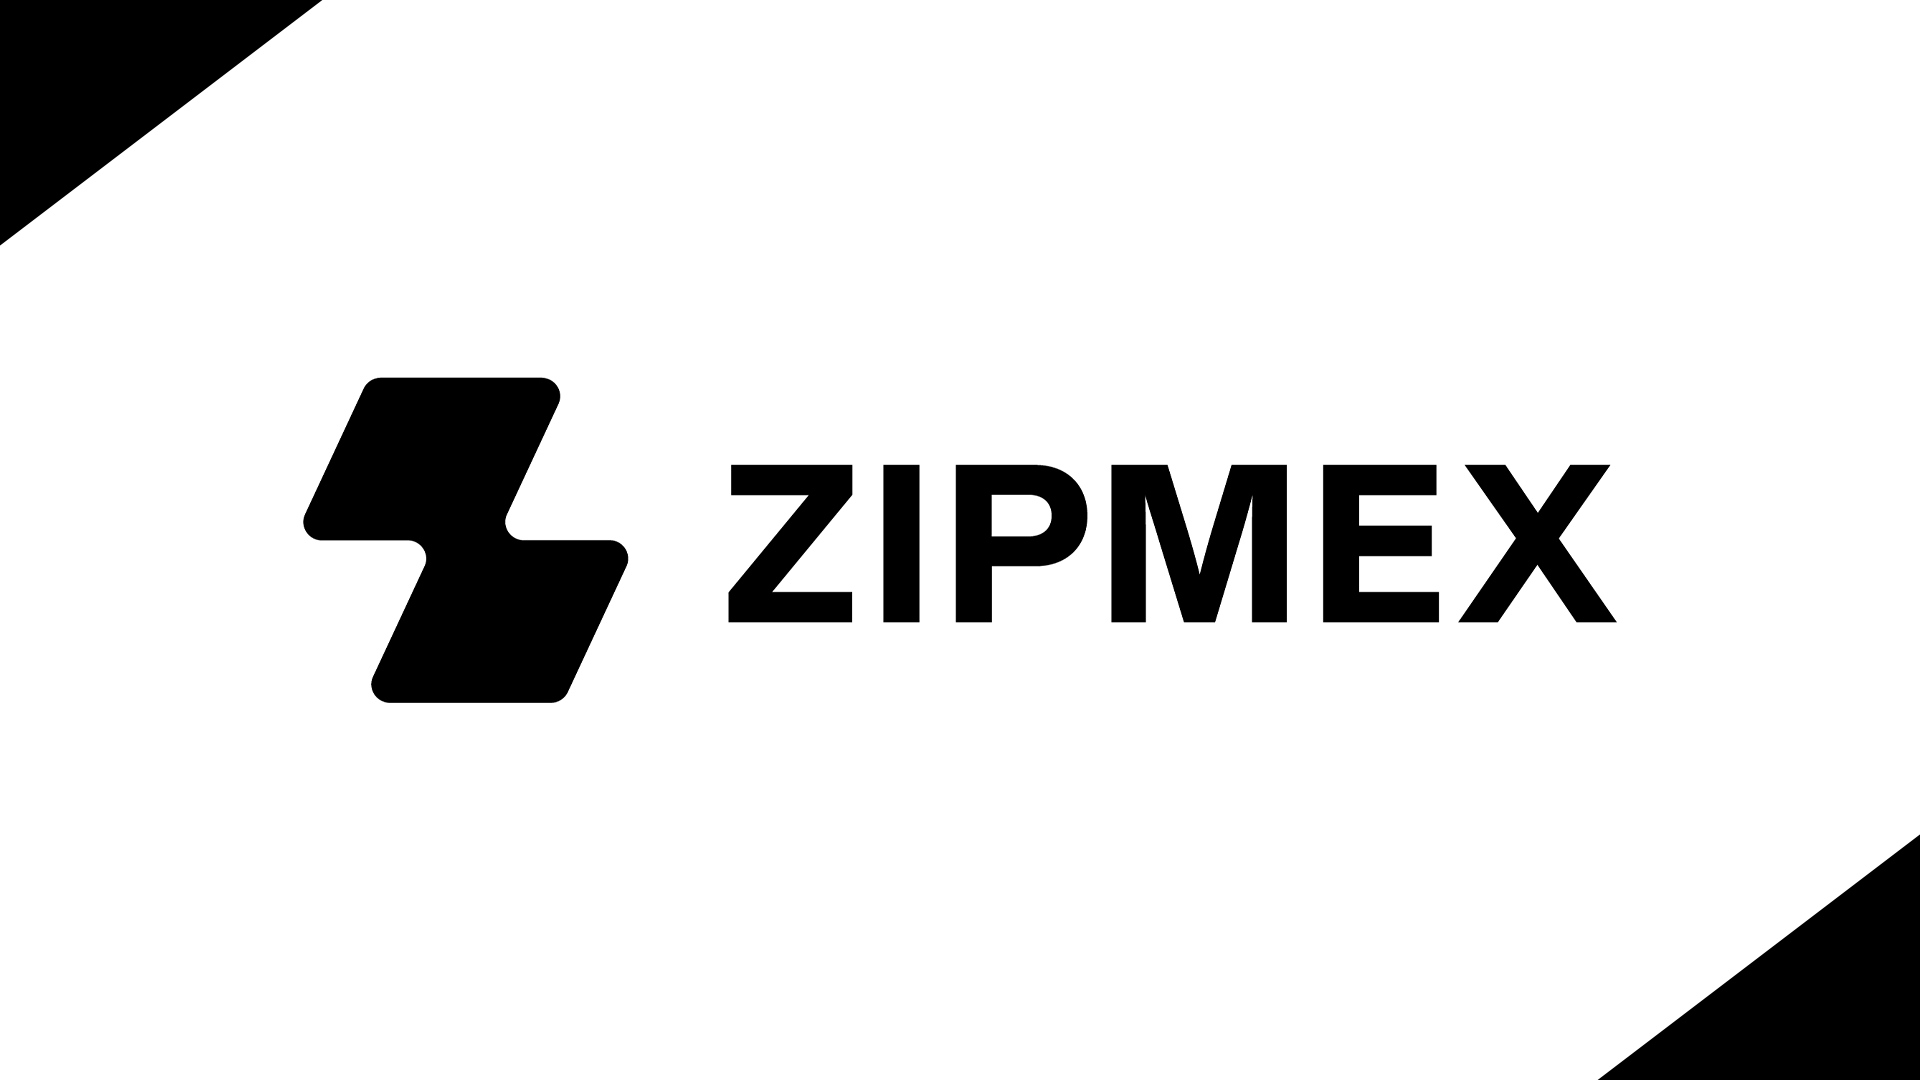 Zipmex ชี้ความเสียหายรวม 1,900 ล้านบาท เผยกำลังเจรจากับคู่ค้าหาทางแก้ไข